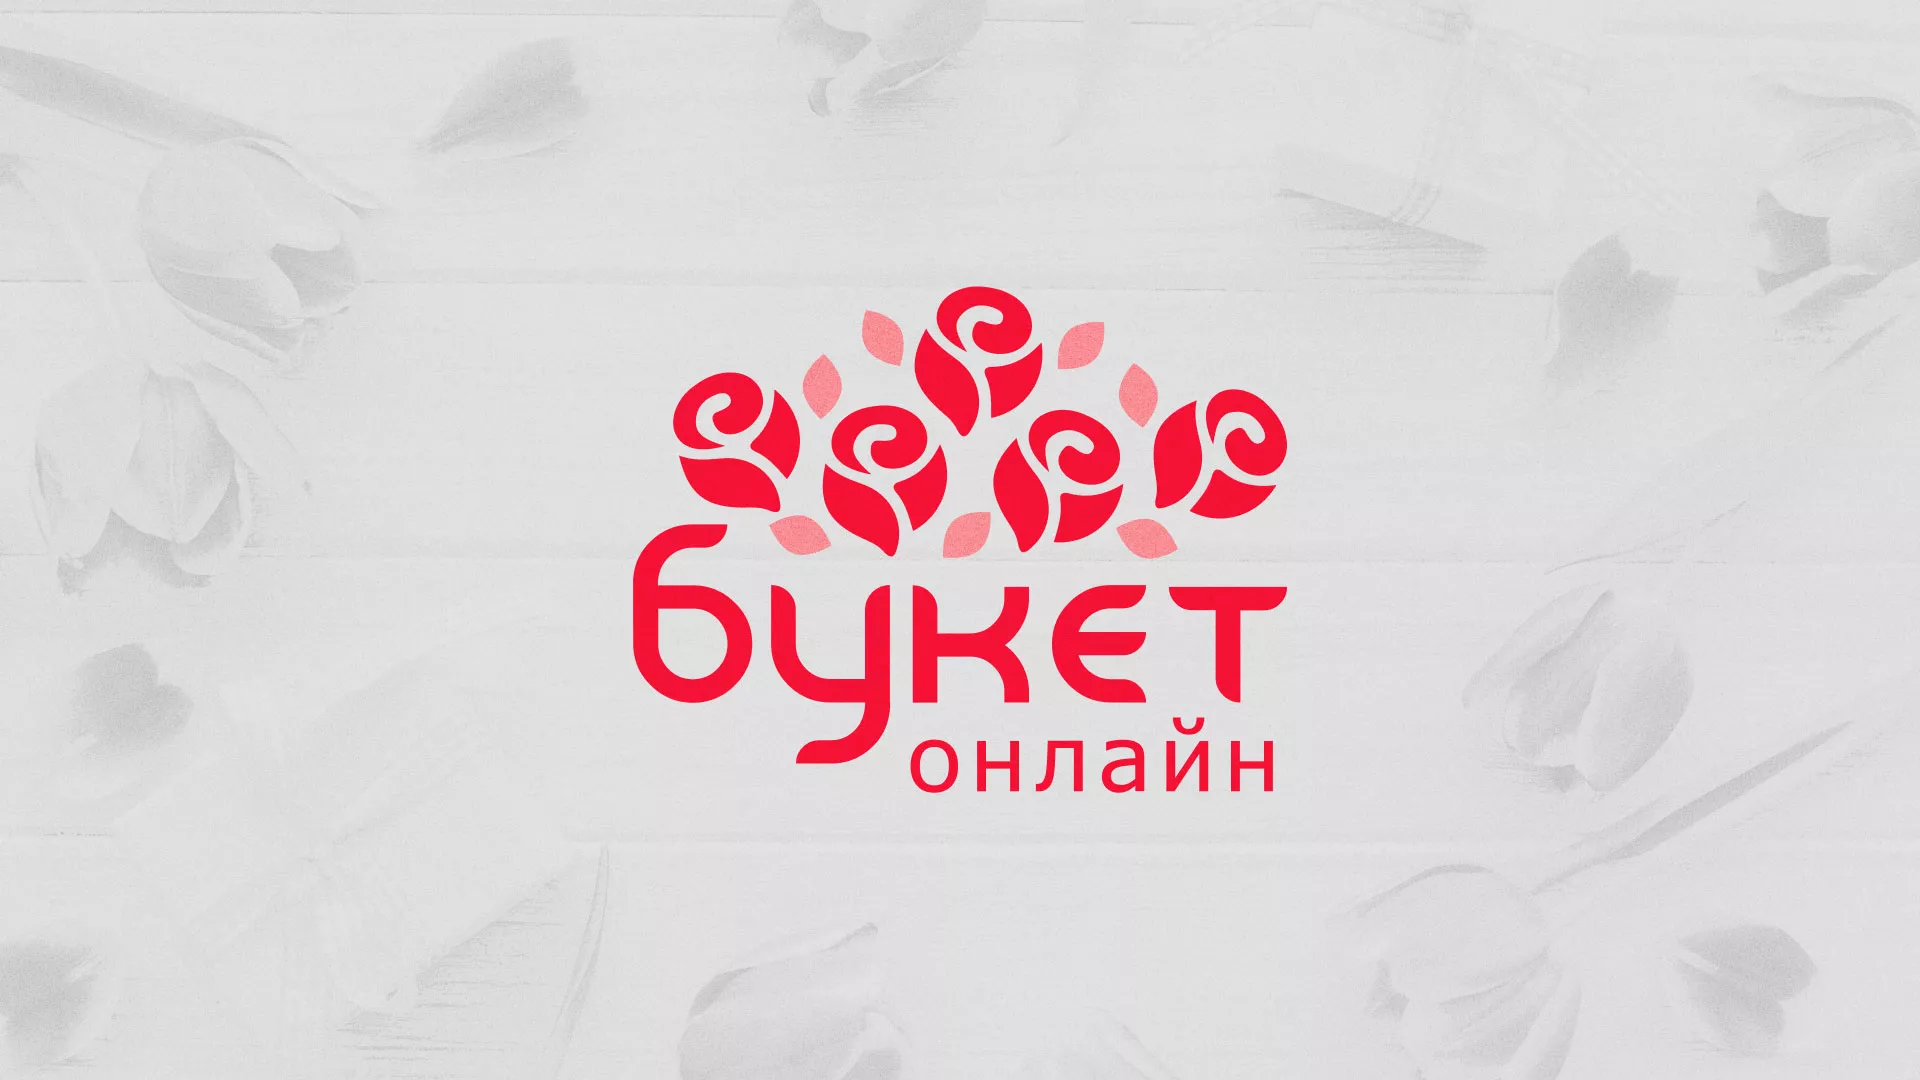 Создание интернет-магазина «Букет-онлайн» по цветам в Октябрьском